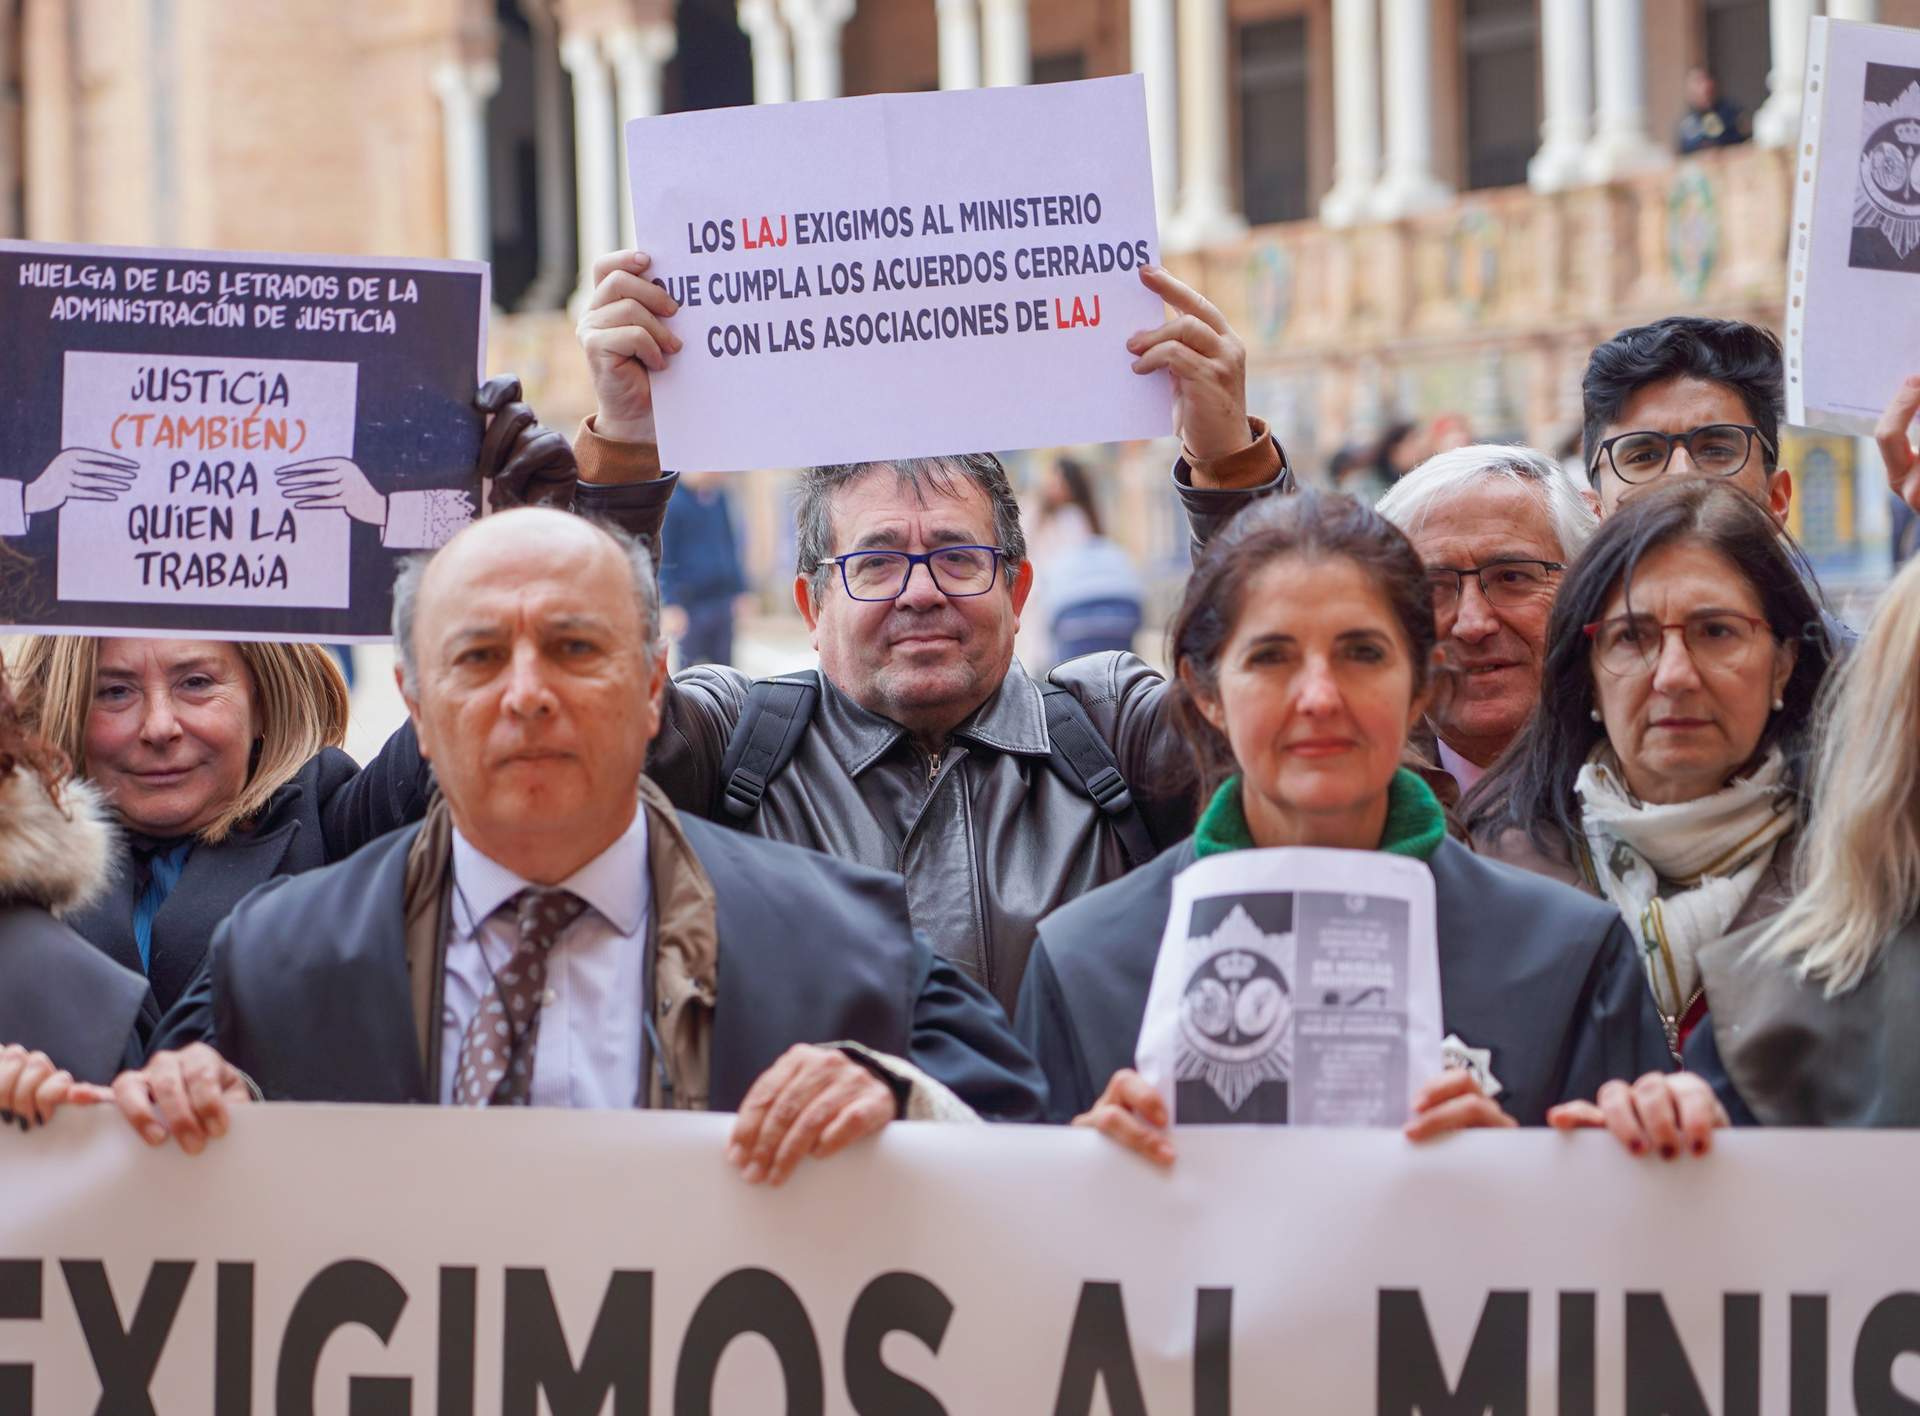 La huelga de letrados deja 26.758 juicios y actuaciones suspendidas en Andalucía y 600.000 comunicaciones pendientes